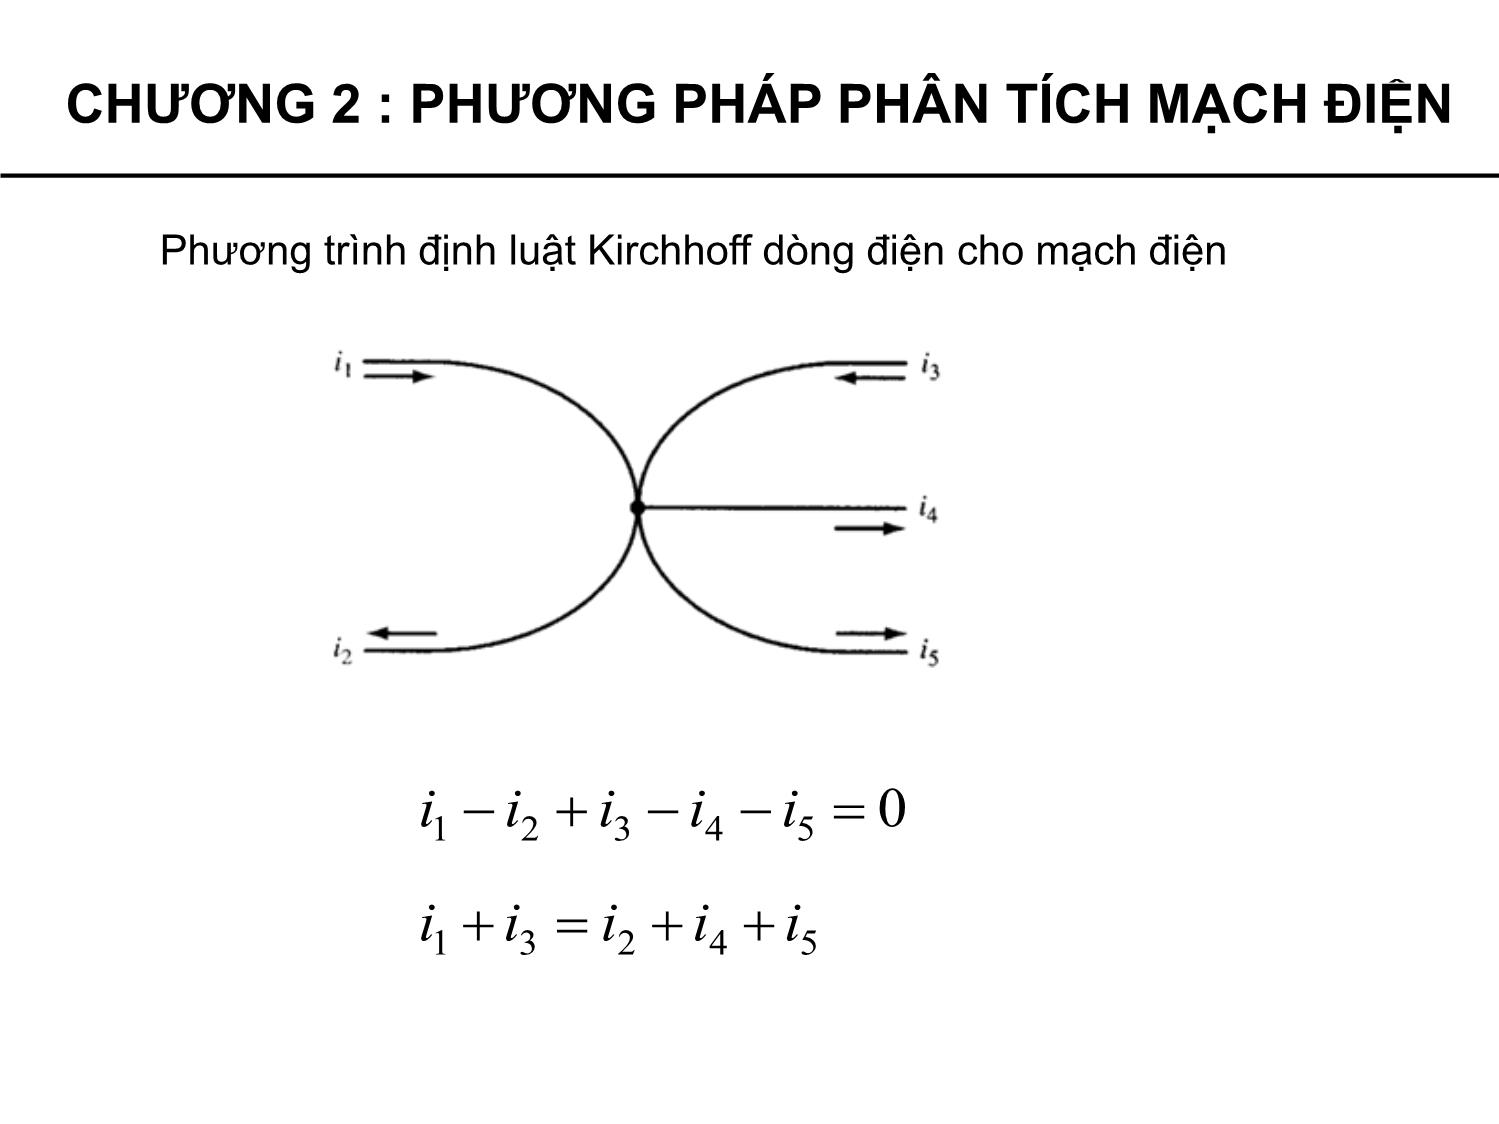 Bài giảng Lý thuyết mạch - Chương 2: Phương pháp phân tích mạch điện - Phạm Khánh Tùng trang 5